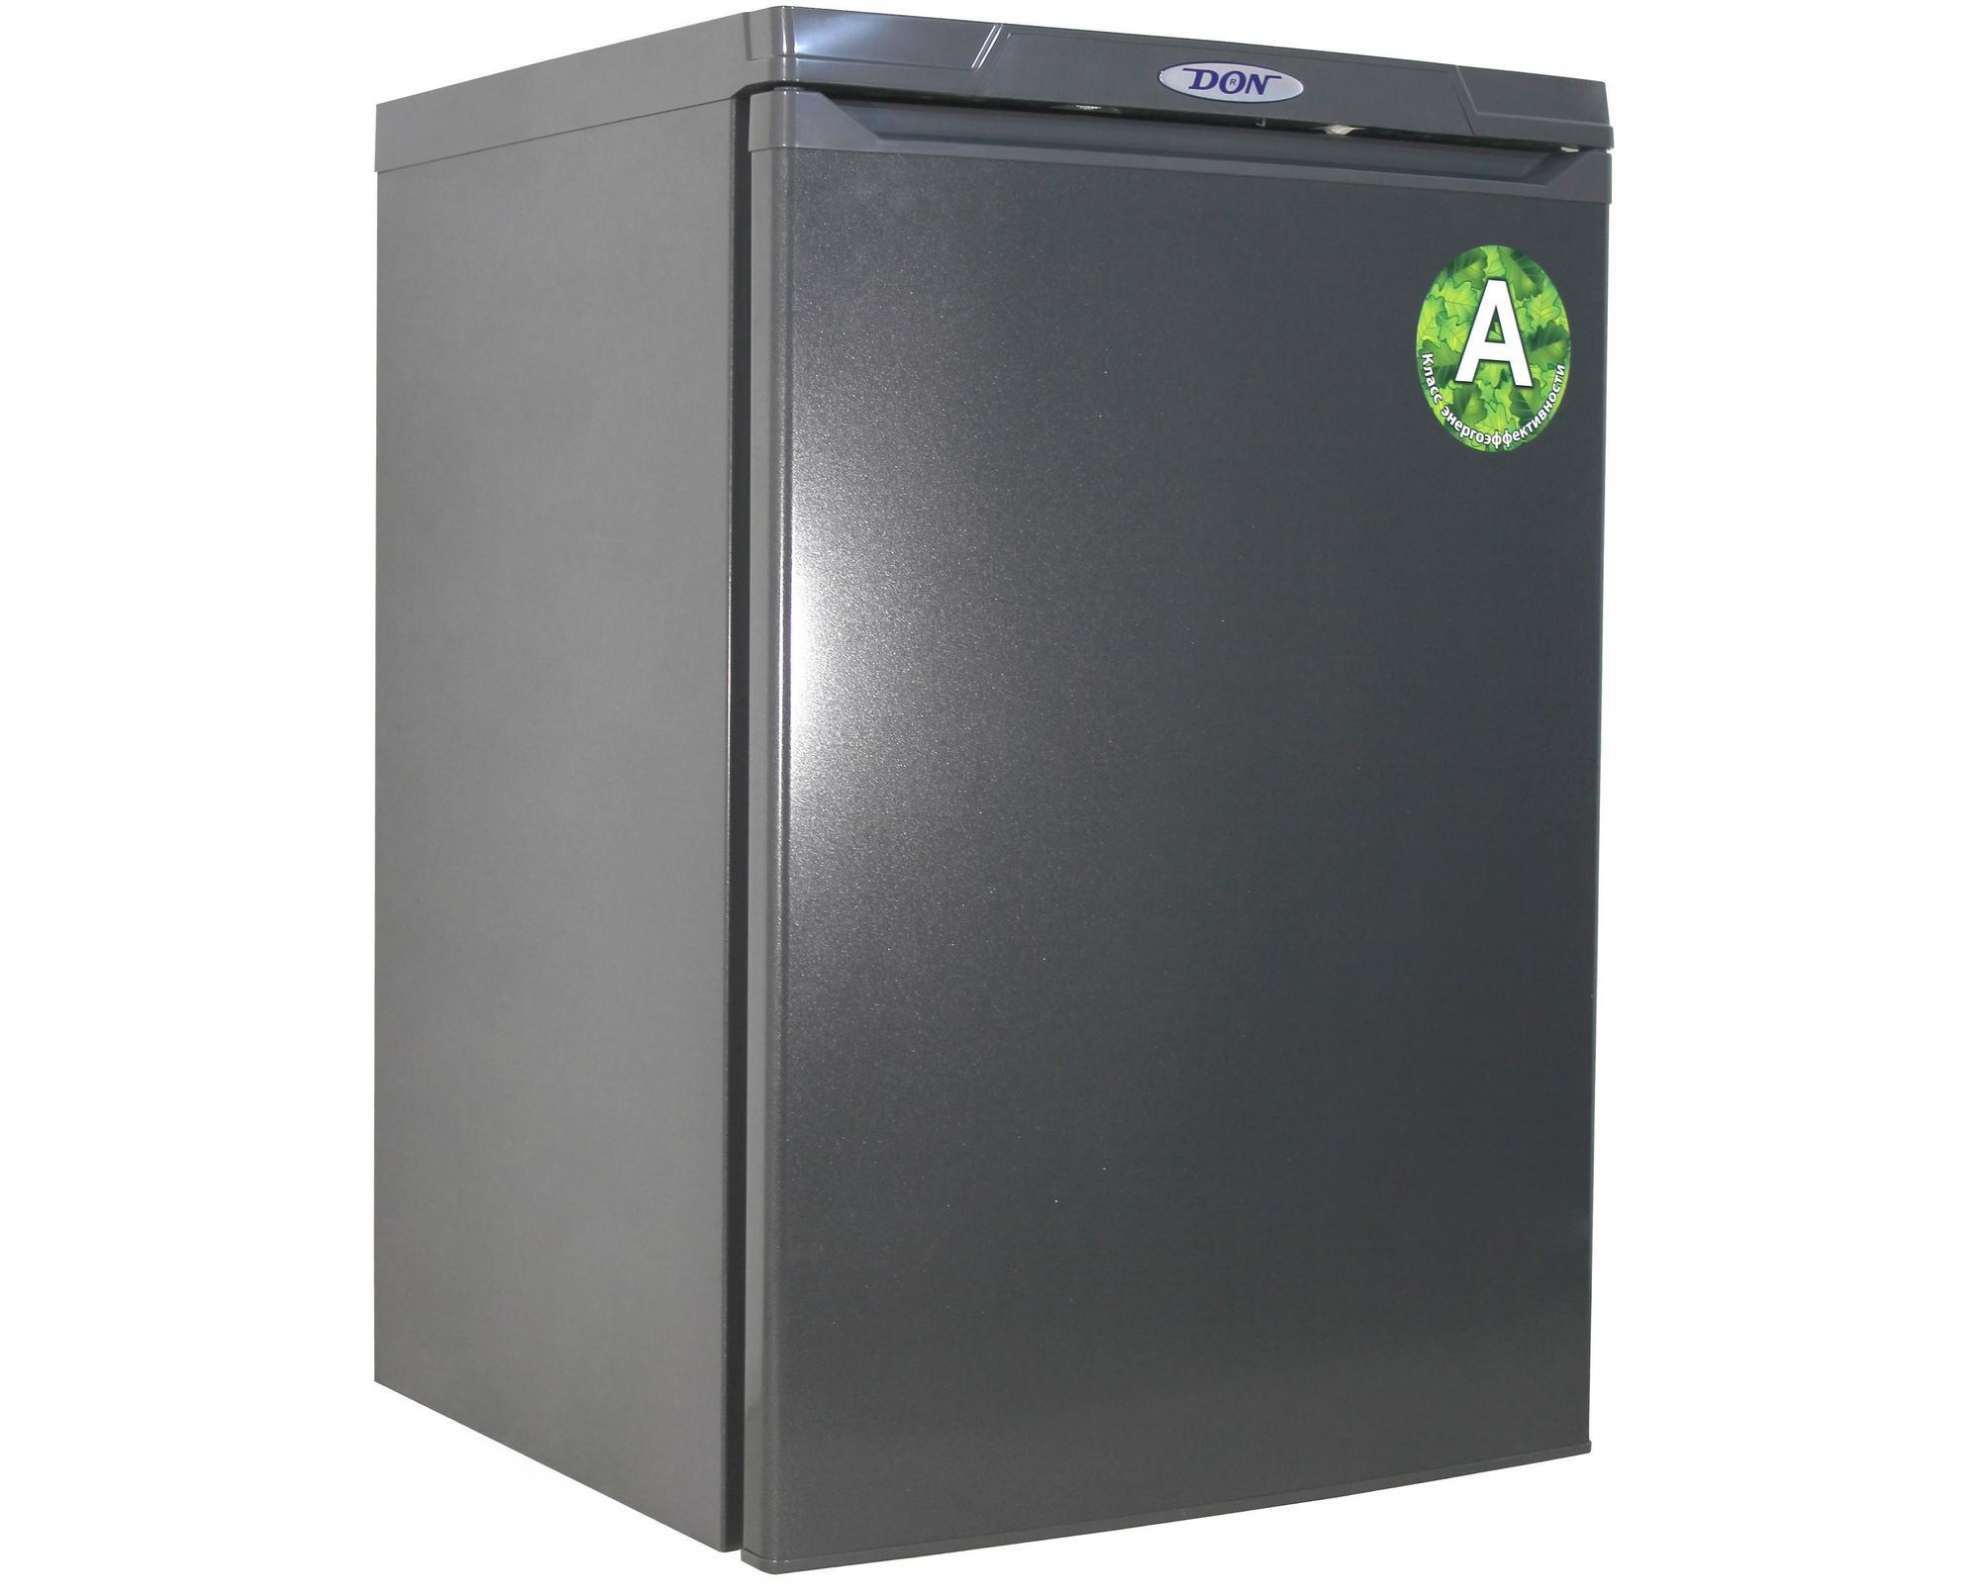 Изображение Холодильник DON R-405 G графитовый (A,172 кВтч/год)